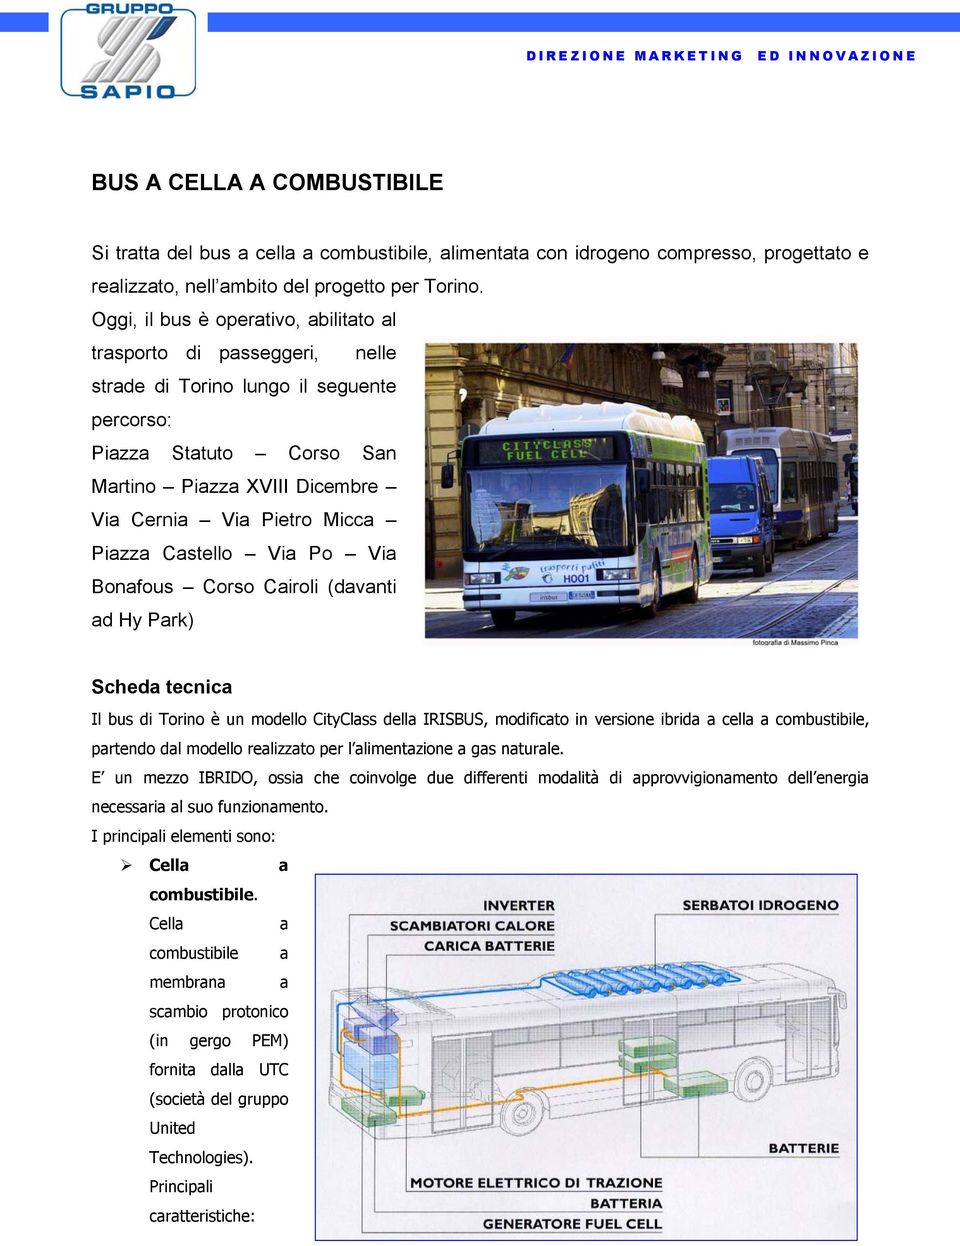 Piazza Castello Via Po Via Bonafous Corso Cairoli (davanti ad Hy Park) Scheda tecnica Il bus di Torino è un modello CityClass della IRISBUS, modificato in versione ibrida a cella a combustibile,